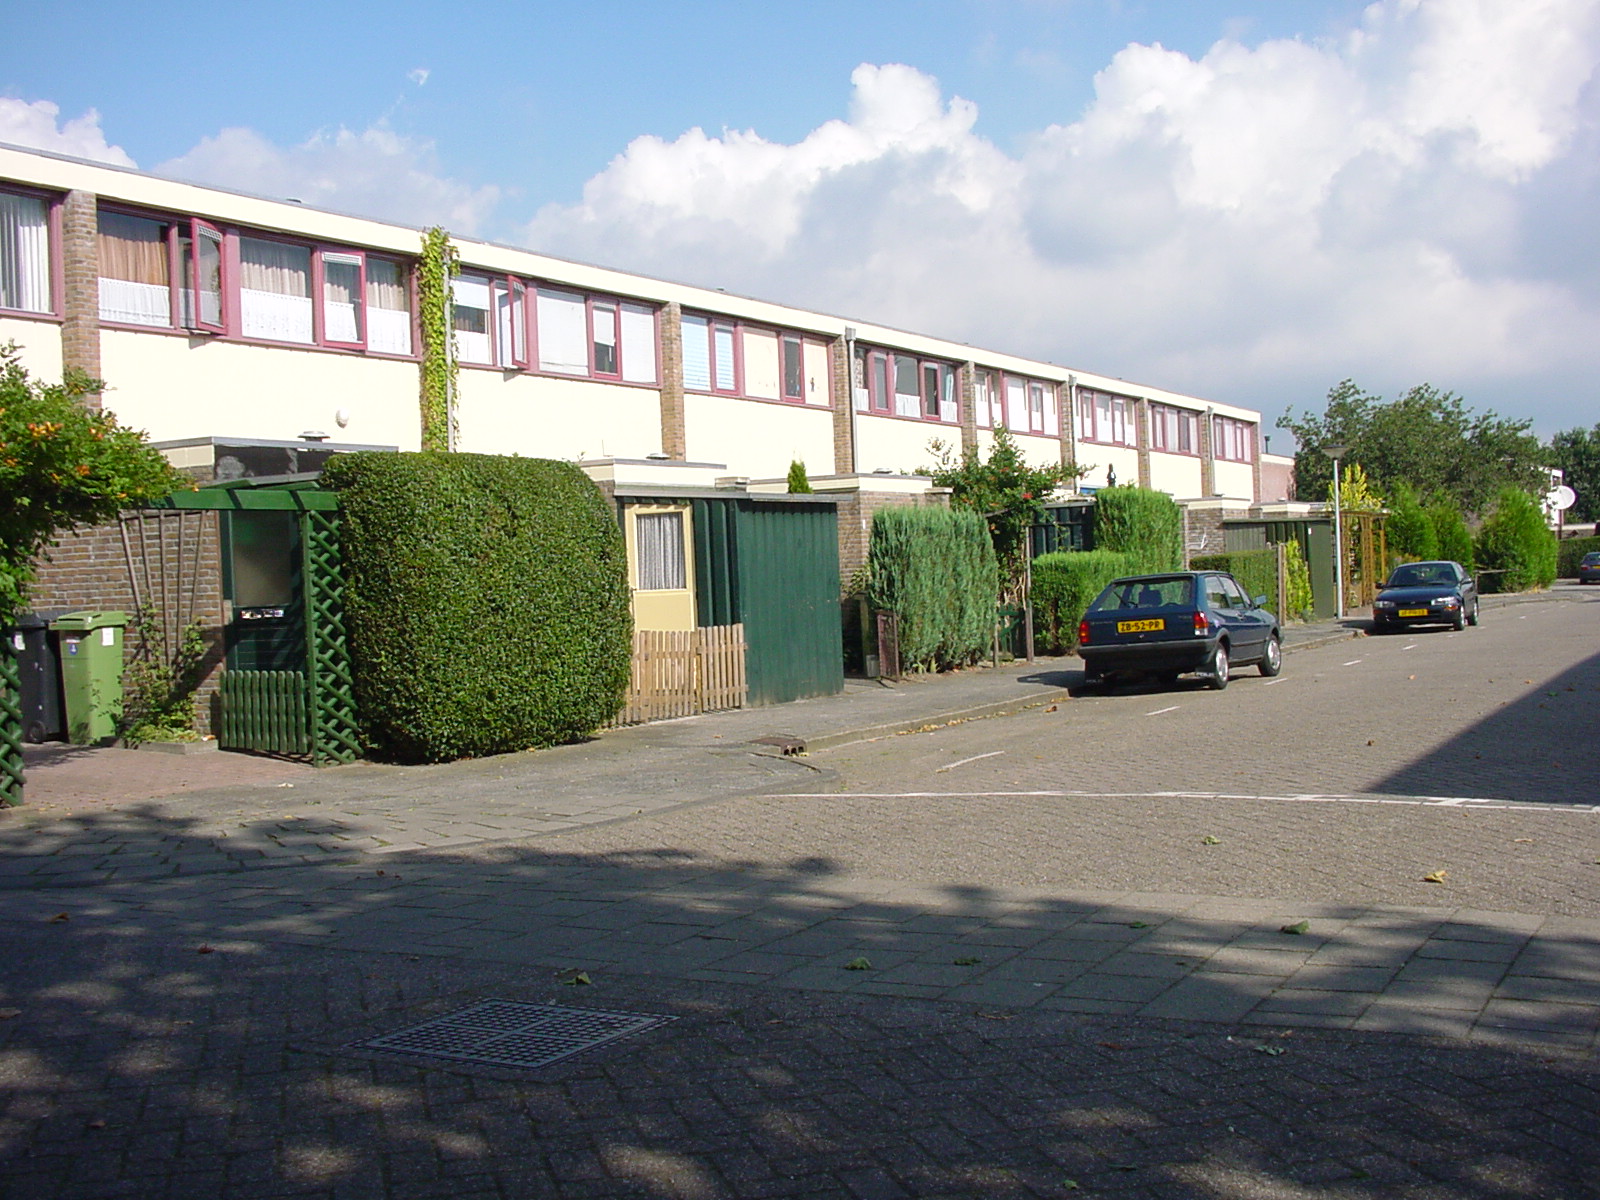 Duymaer van Twiststraat 11, 8331 BB Steenwijk, Nederland